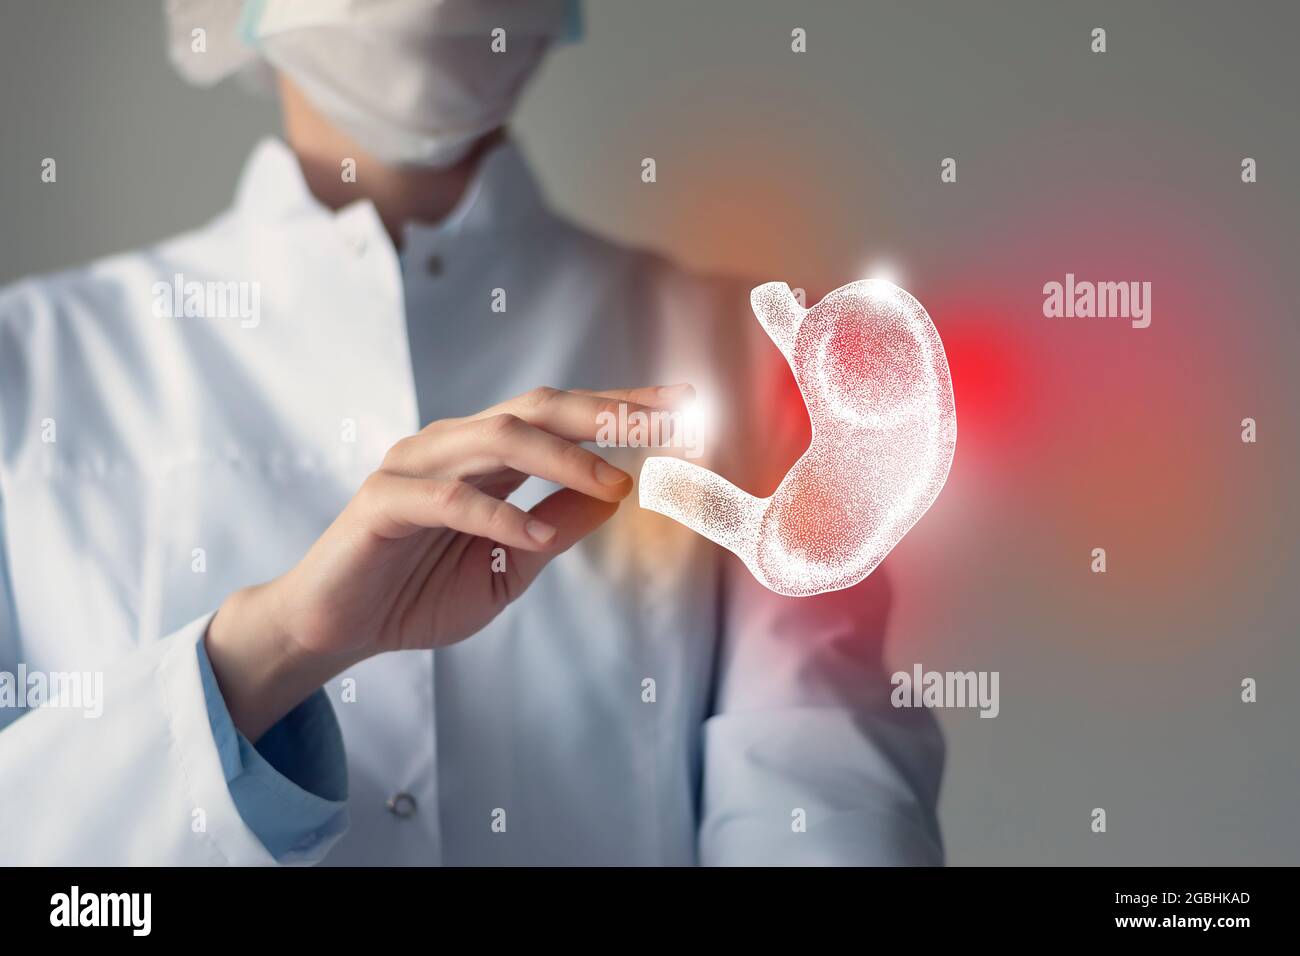 La doctora toca el estómago virtual en la mano. Foto borrosa, órgano humano de mano, resaltado en rojo como símbolo de la enfermedad. Servicio hospitalario sanitario Foto de stock